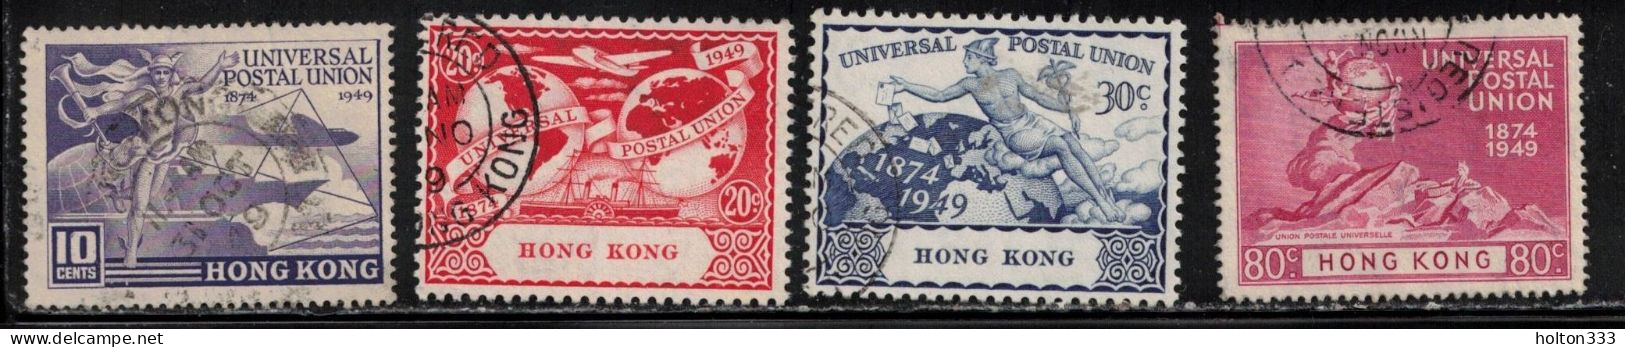 HONG KONG Scott # 180-3 Used - 1949 UPU Issue - Gebraucht